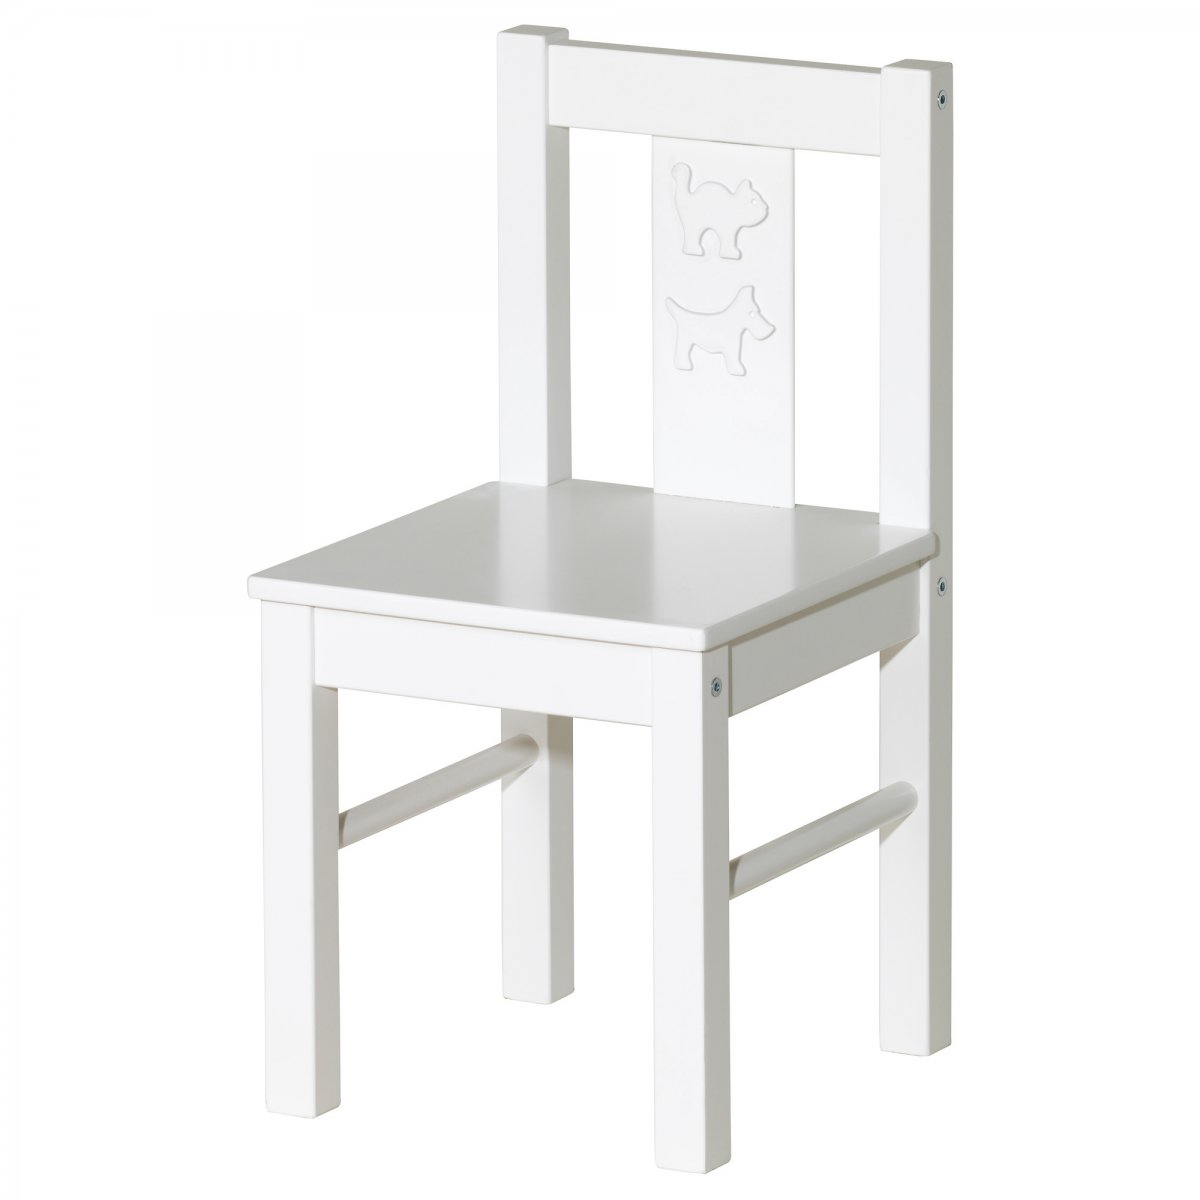 Mobiliario para niños Kritter de Ikea